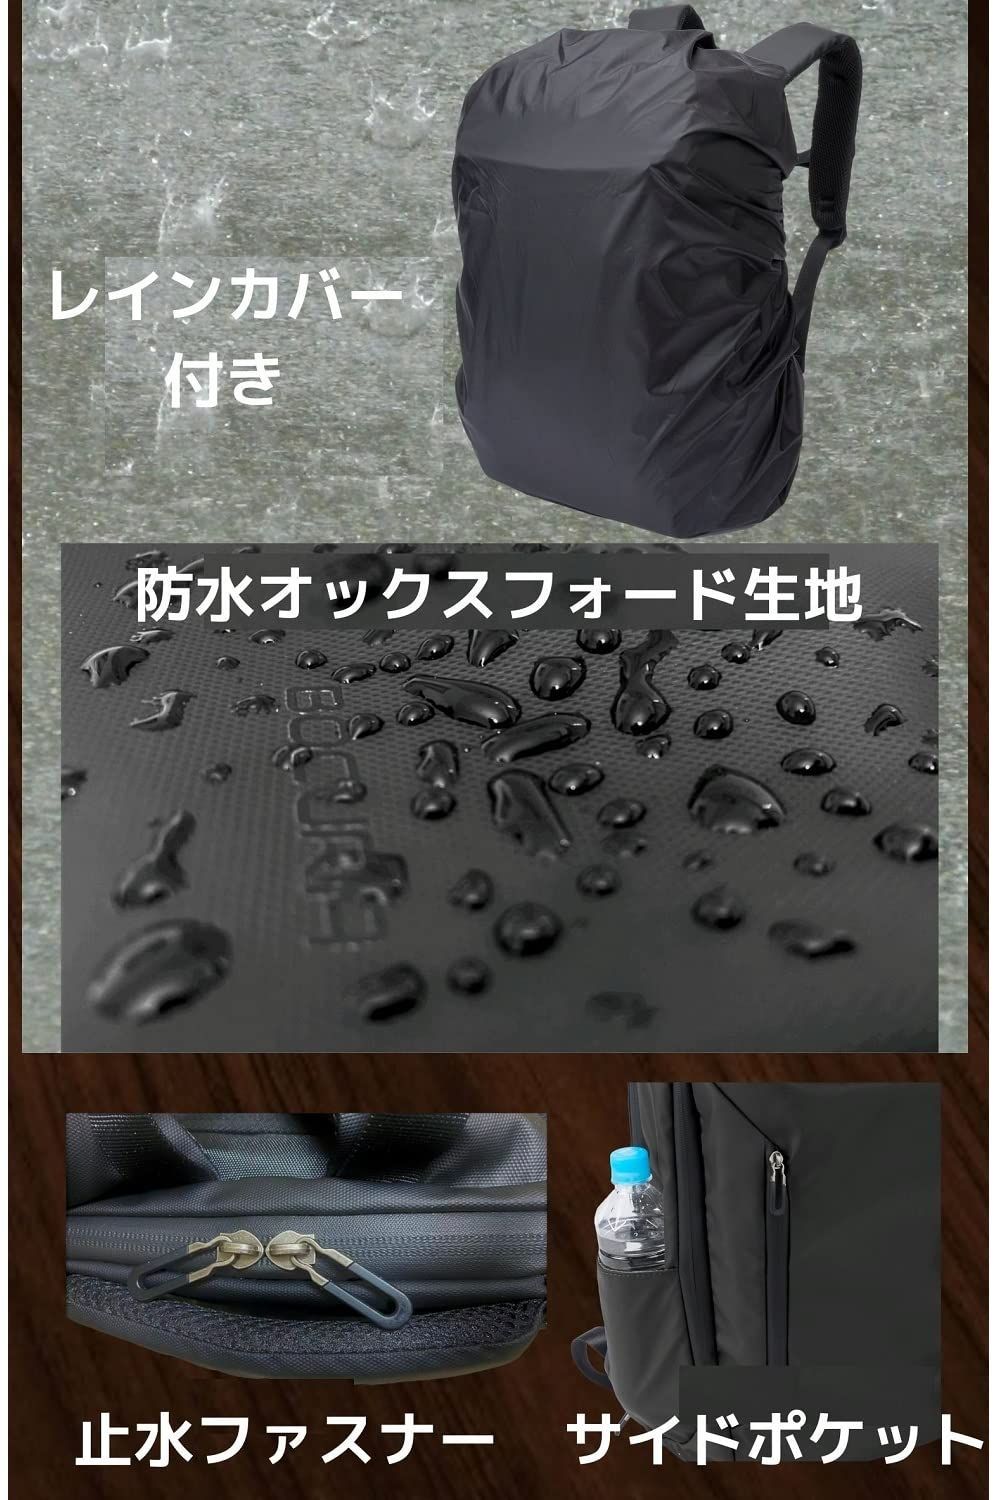 【色: デザートカモフラージュ】LONGZHI ビジネスリュック メンズ 防水